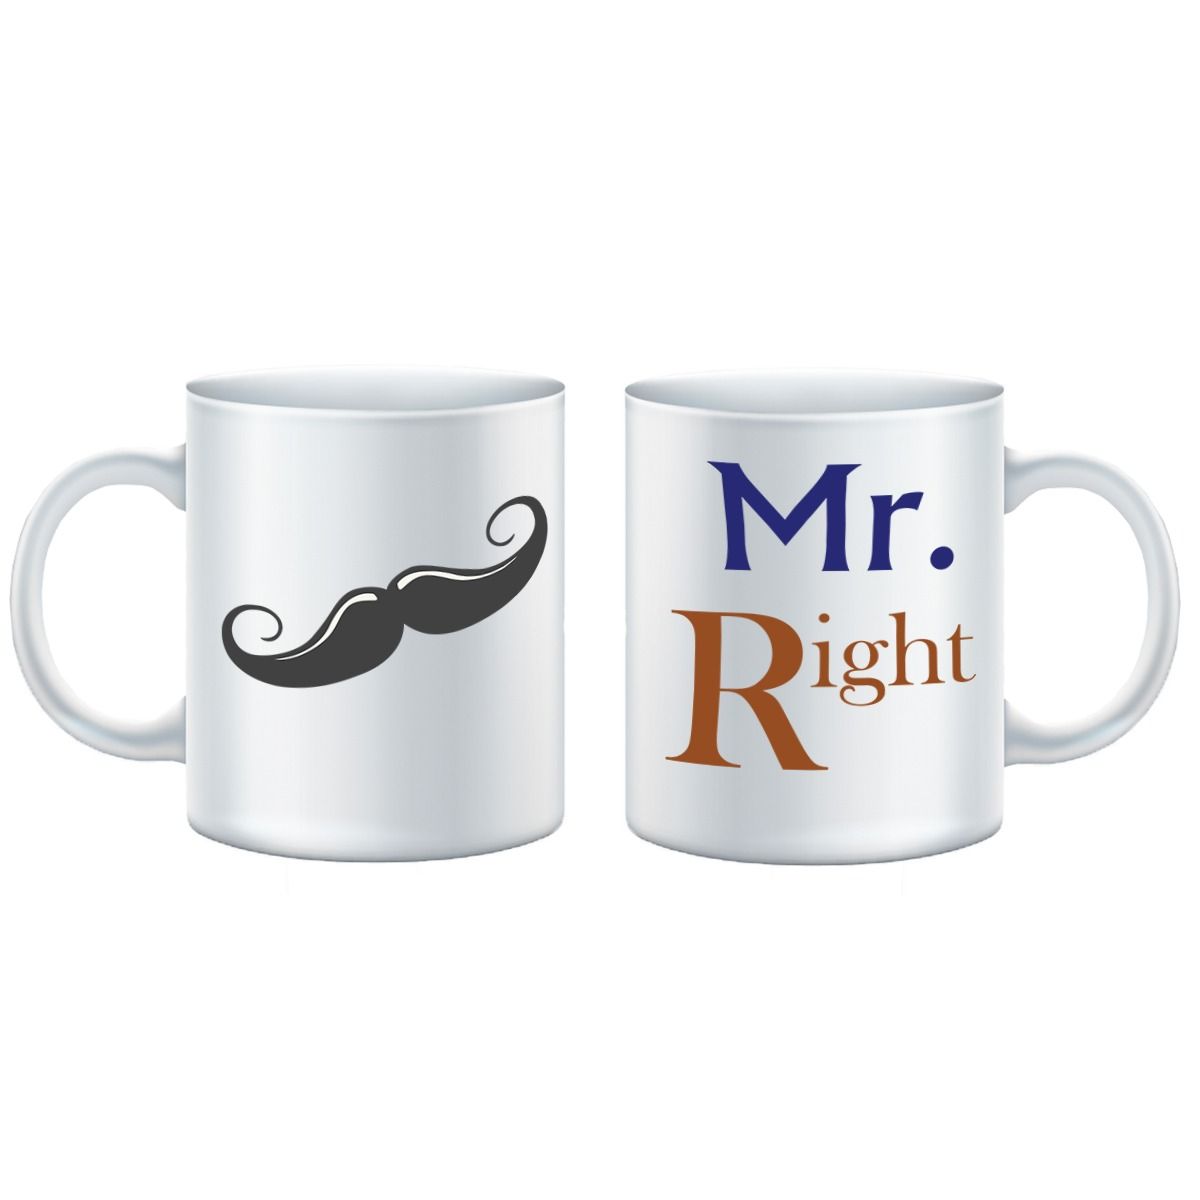 Mr. Right Mug